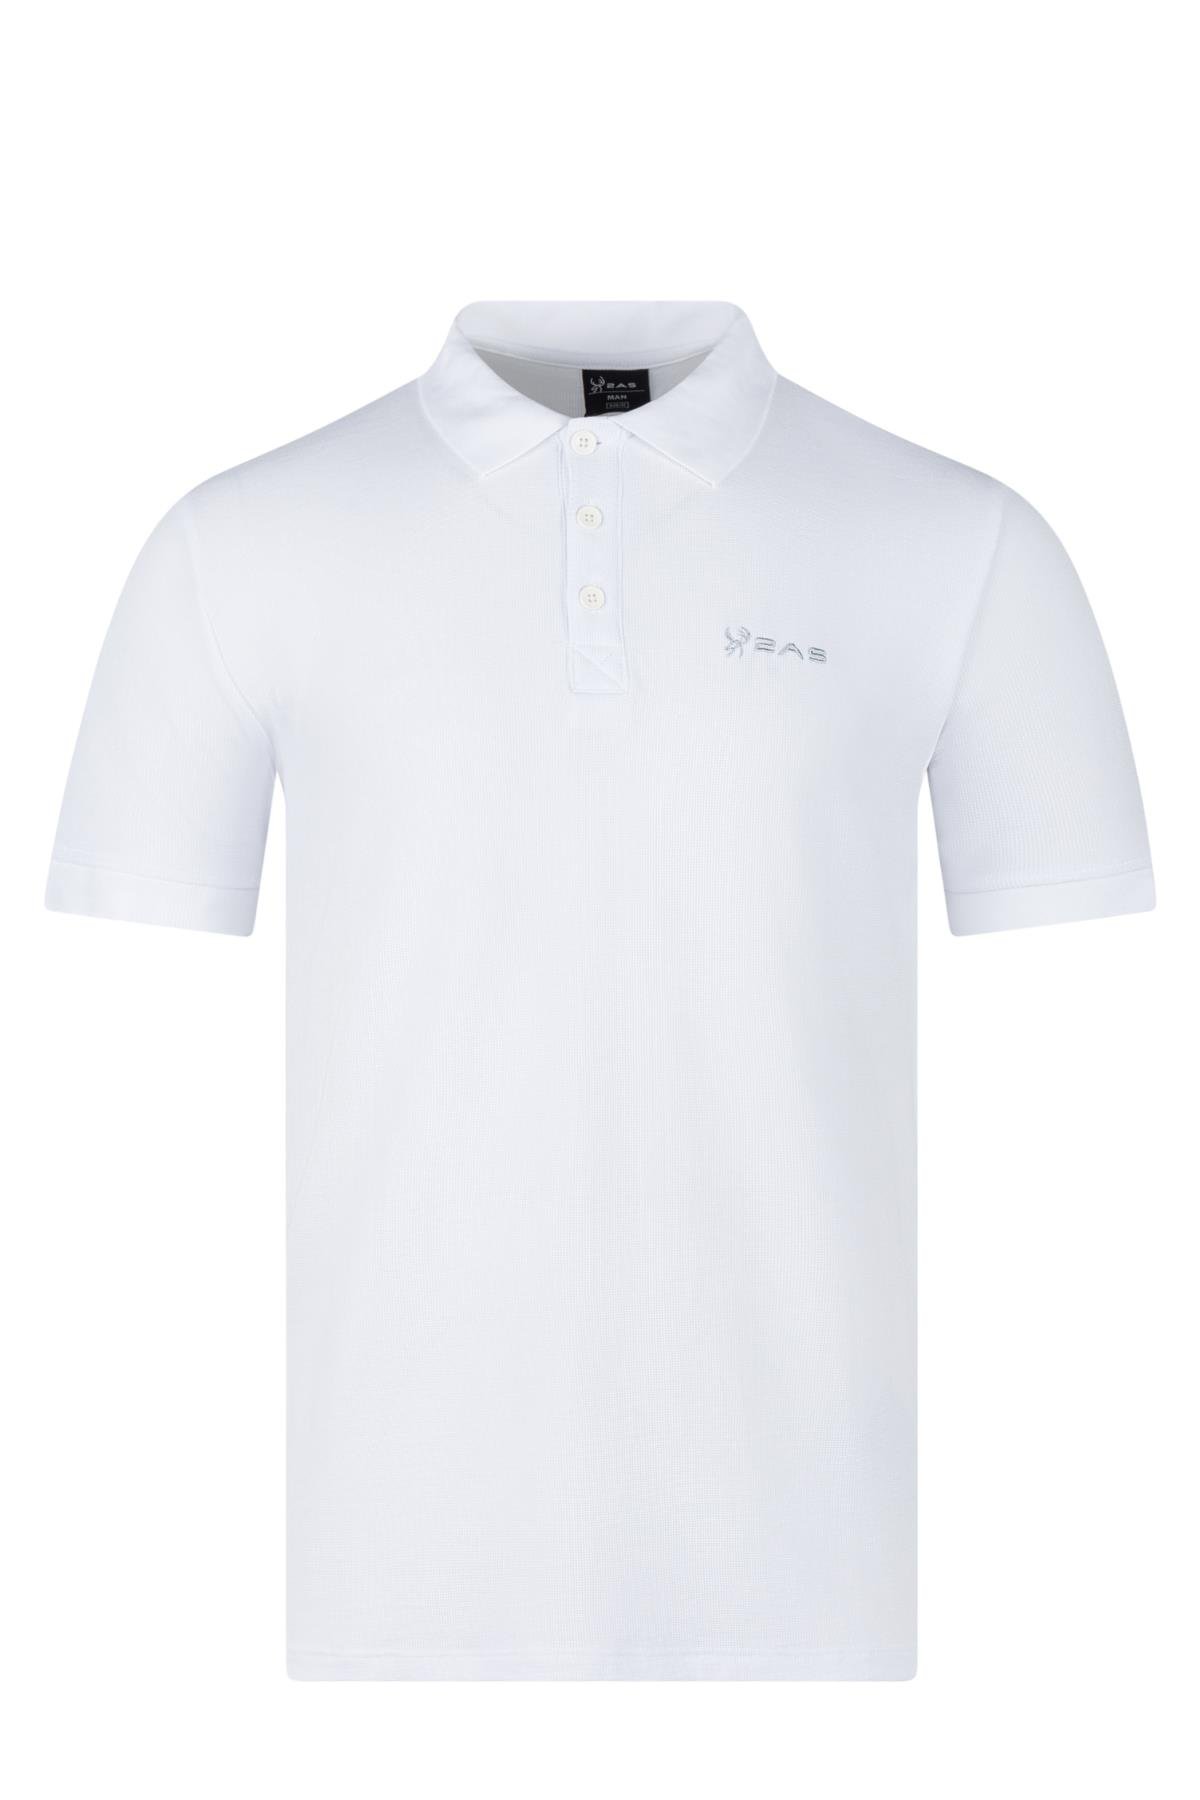 2AS Aluna Polo Yaka T-Shirt Beyaz